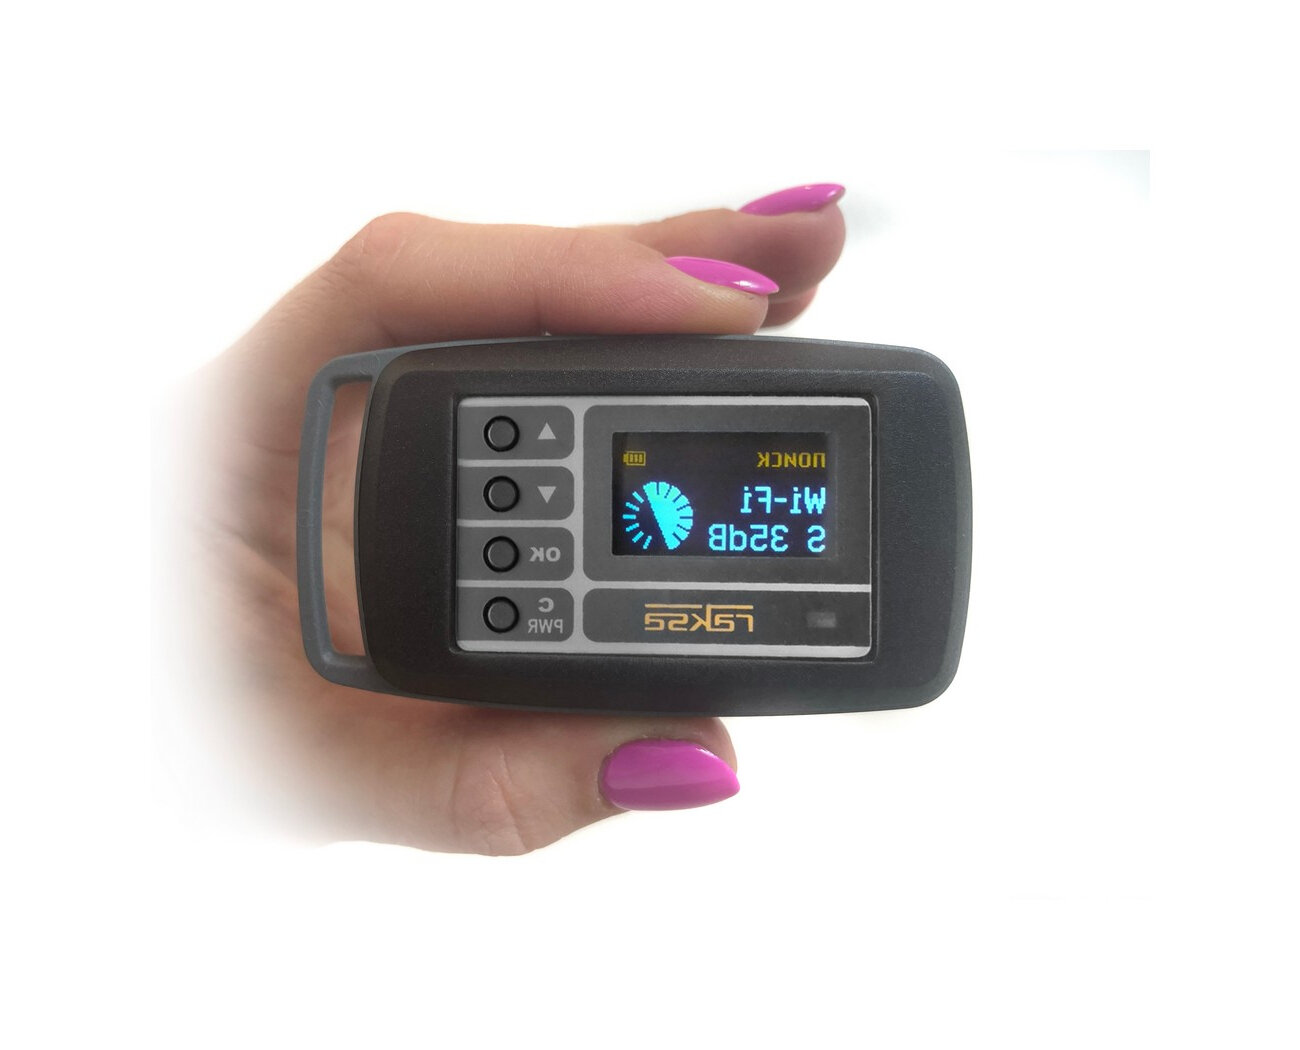 Антижучок (детектор жучков) Raksa 121 Pro edition (Y10465KAR) - прибор для обнаружения прослушки и камер сканер для поиска скрытых жучков